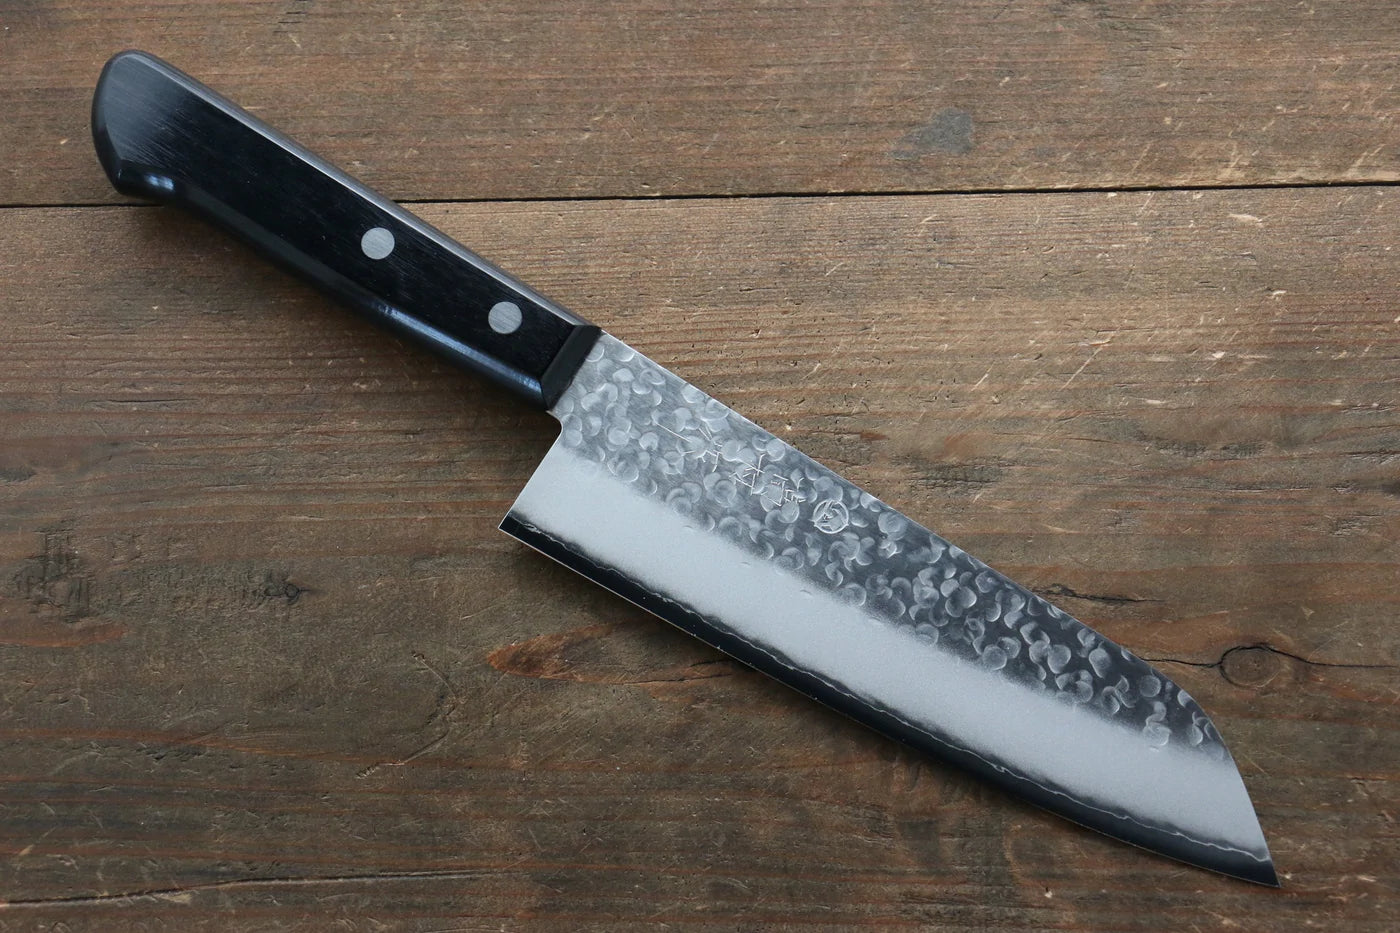 Takamura Knives Marke Chromax-Stahl Handgeschmiedetes Santoku-Mehrzweckmesser Japanisches Messer 170 mm Griff aus schwarzem Pakkaholz